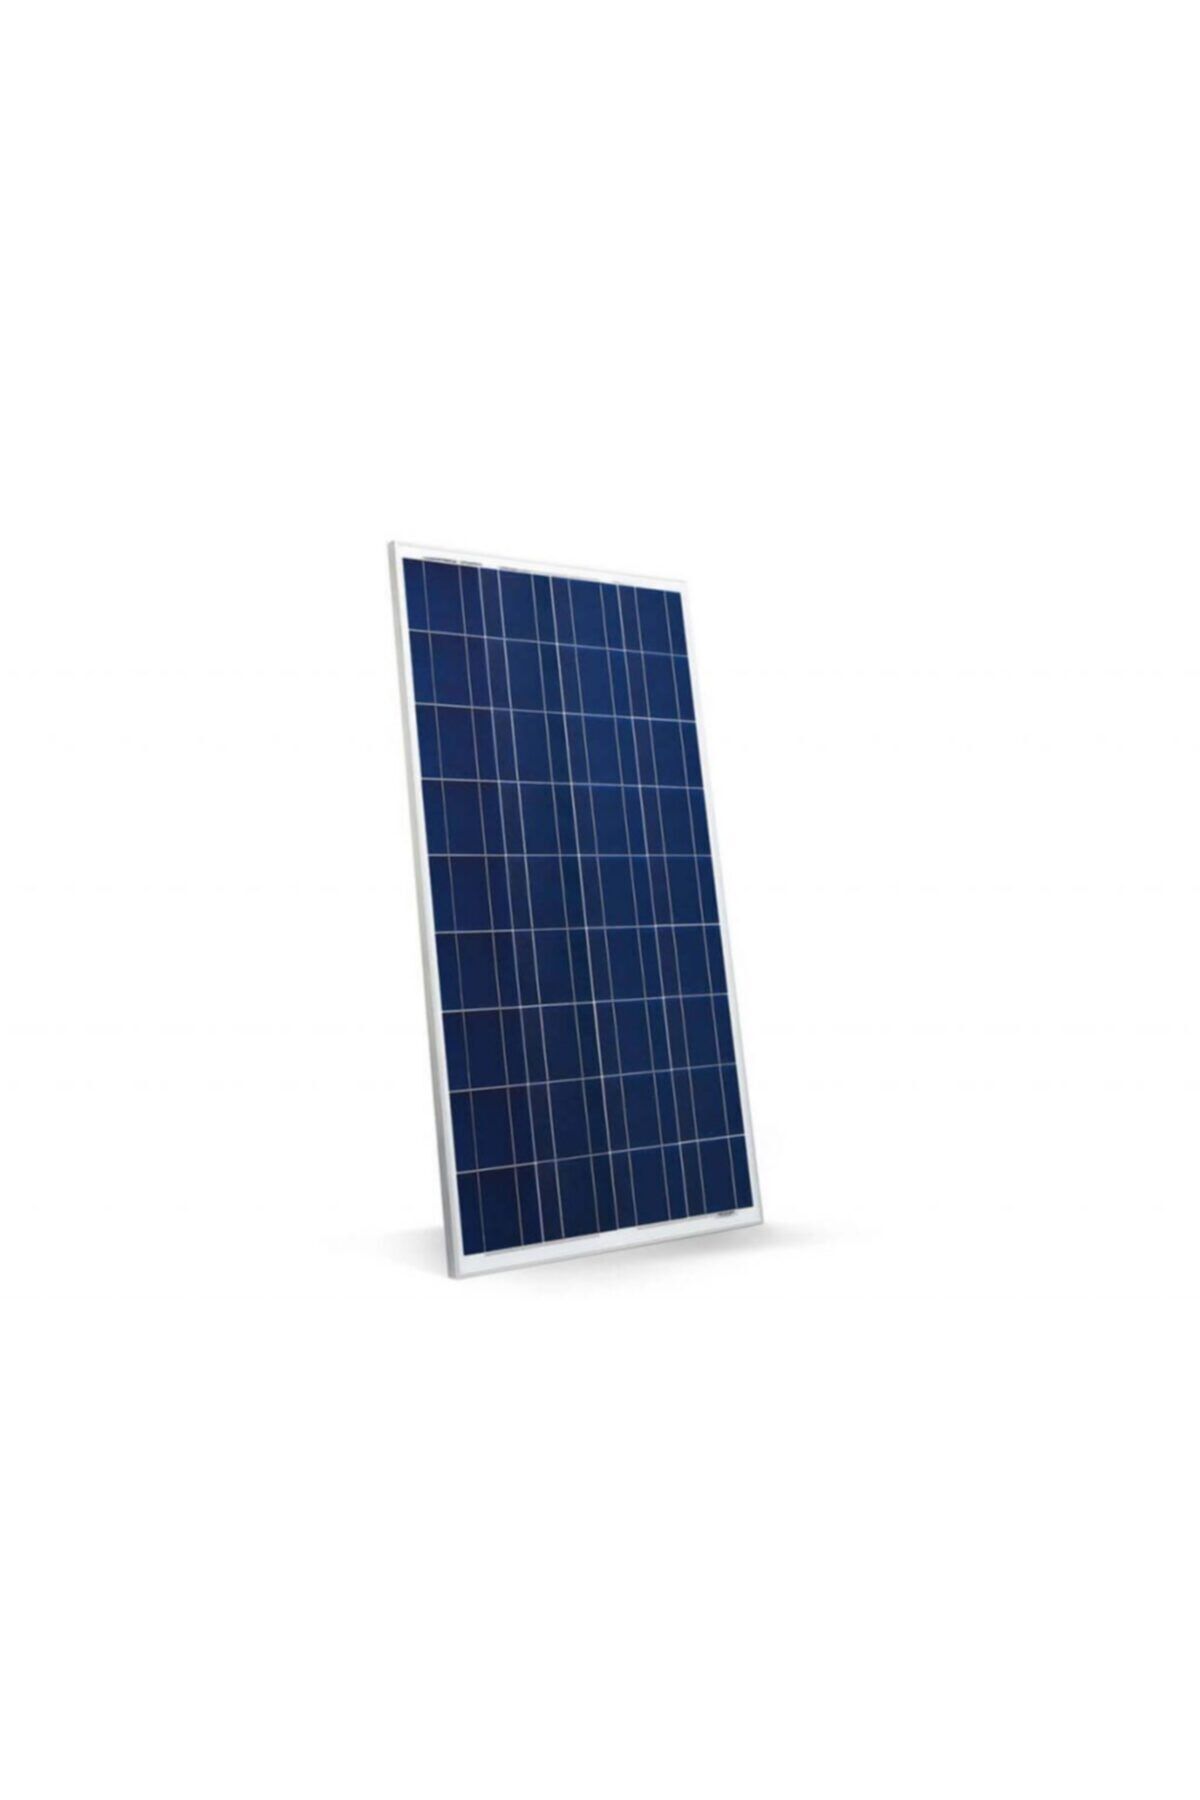 Lexron Güneş Paneli Yüksek Verim 125 Watt